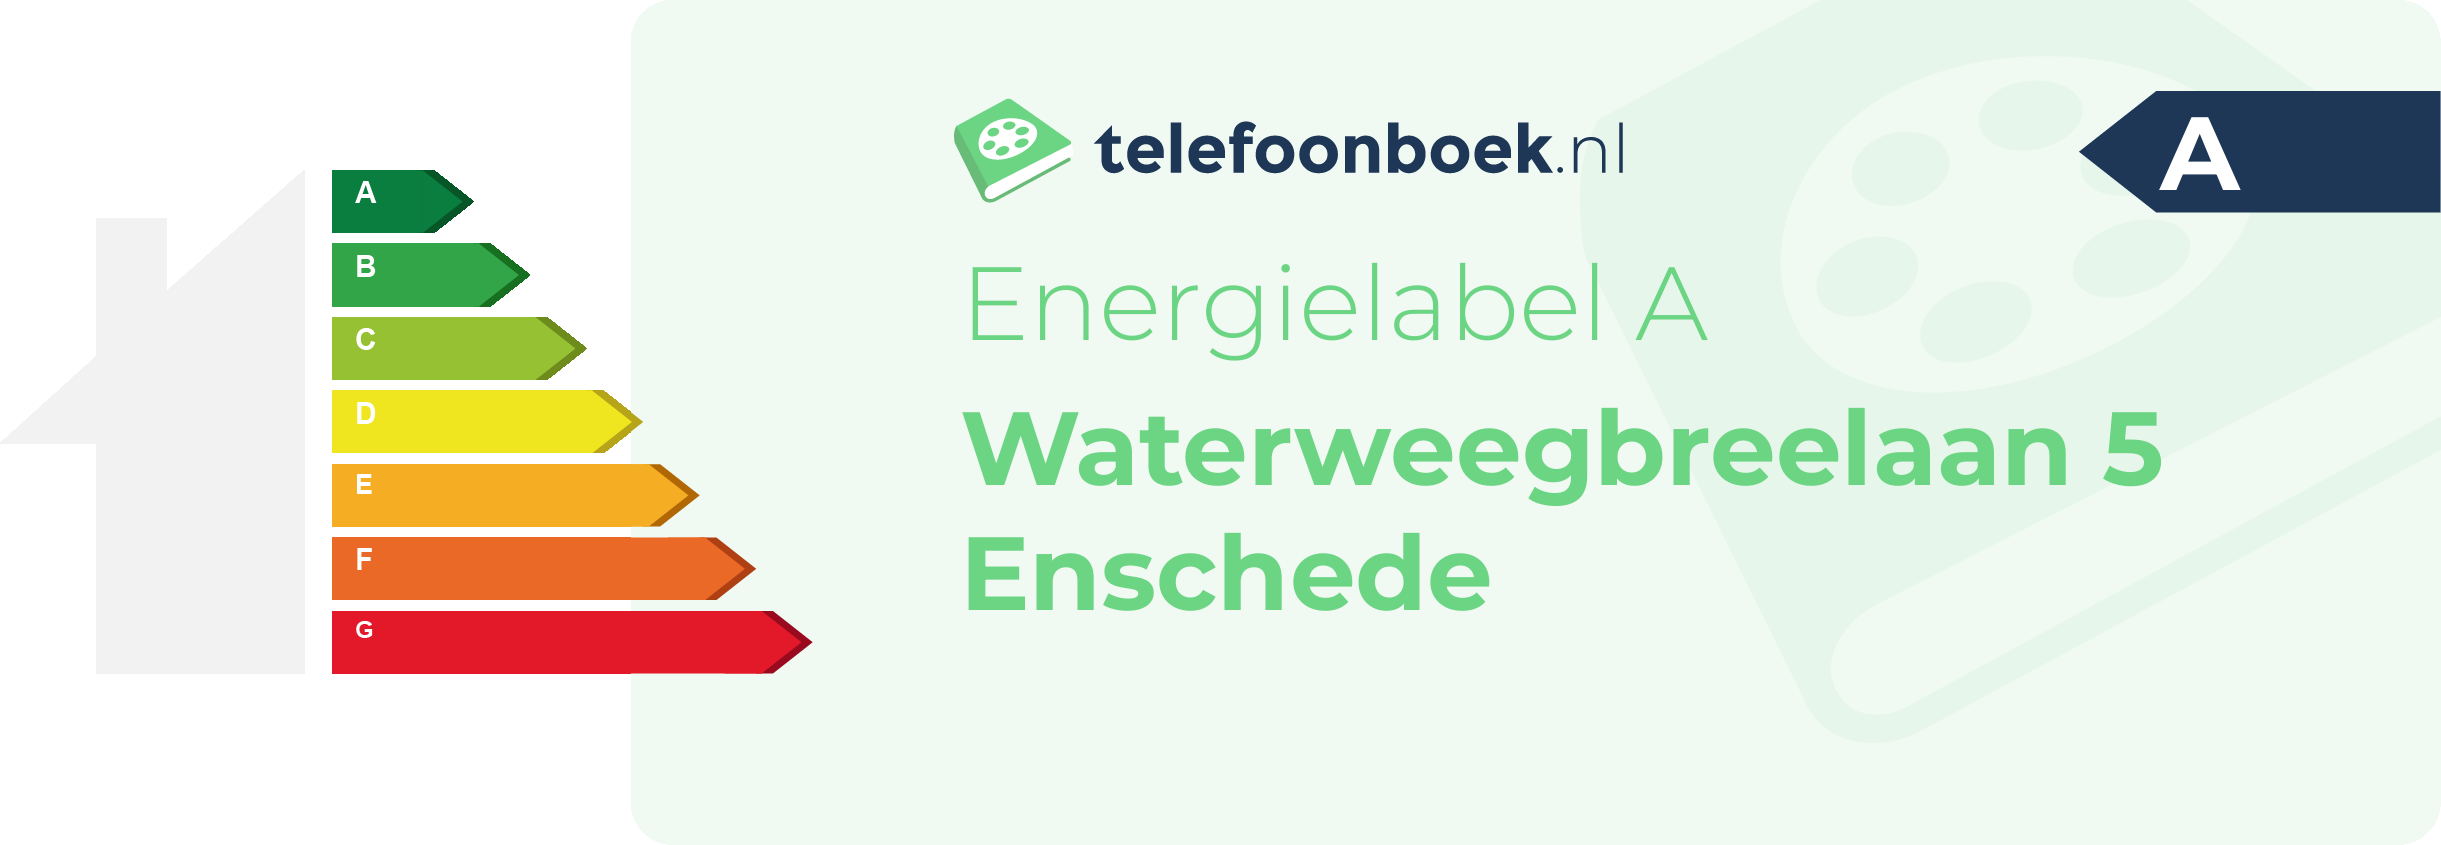 Energielabel Waterweegbreelaan 5 Enschede